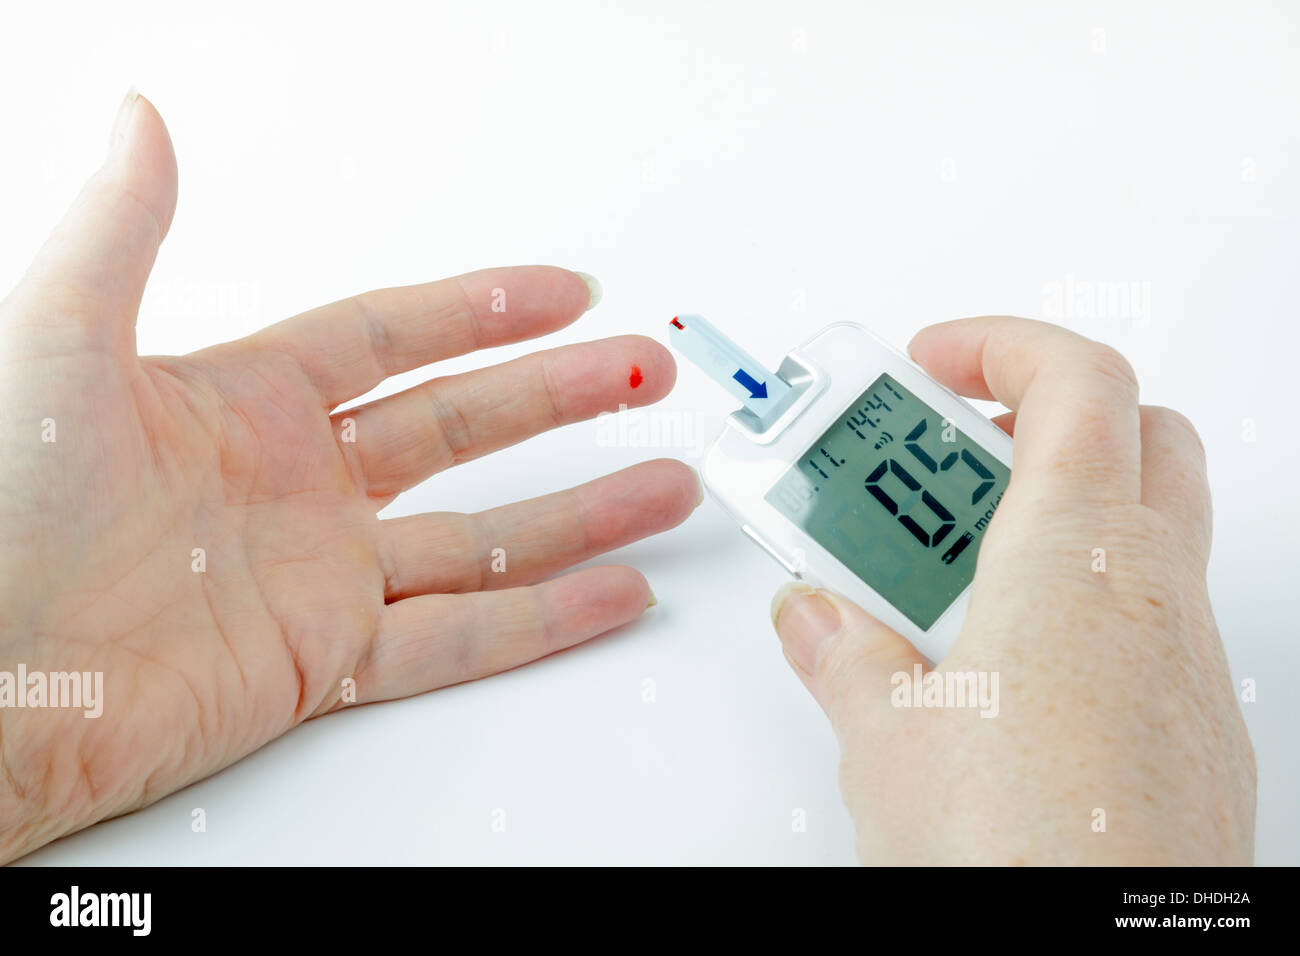 Test de glycémie diabétique - sang sur bout de doigt et de compteur Banque D'Images